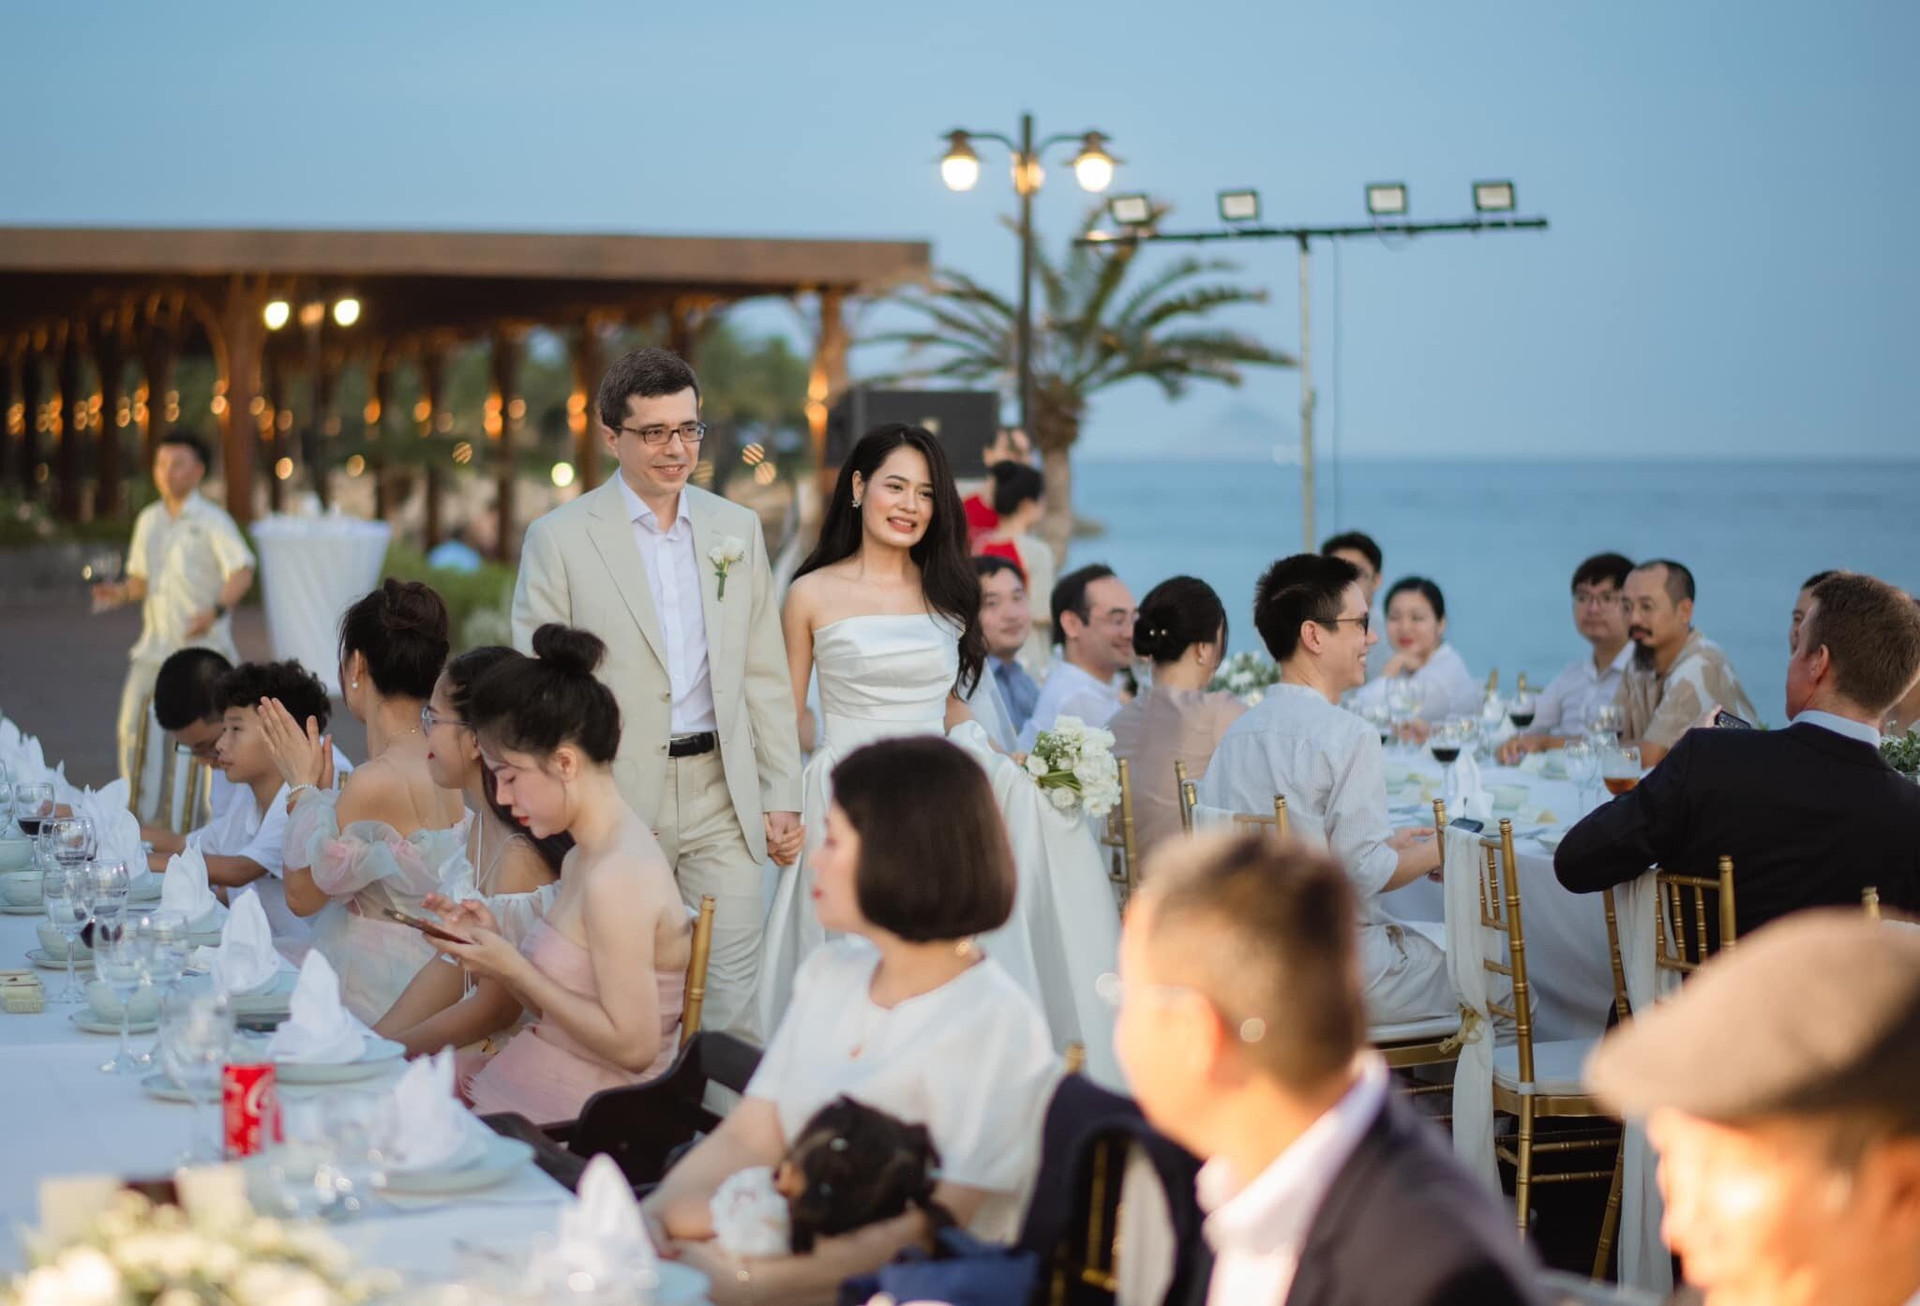 Sau đám cưới tại quê nhà, cặp đôi tiếp tục tổ chức một buổi tiệc cưới lãng mạn trên bờ biển với sự tham gia của bạn bè thân thiết.